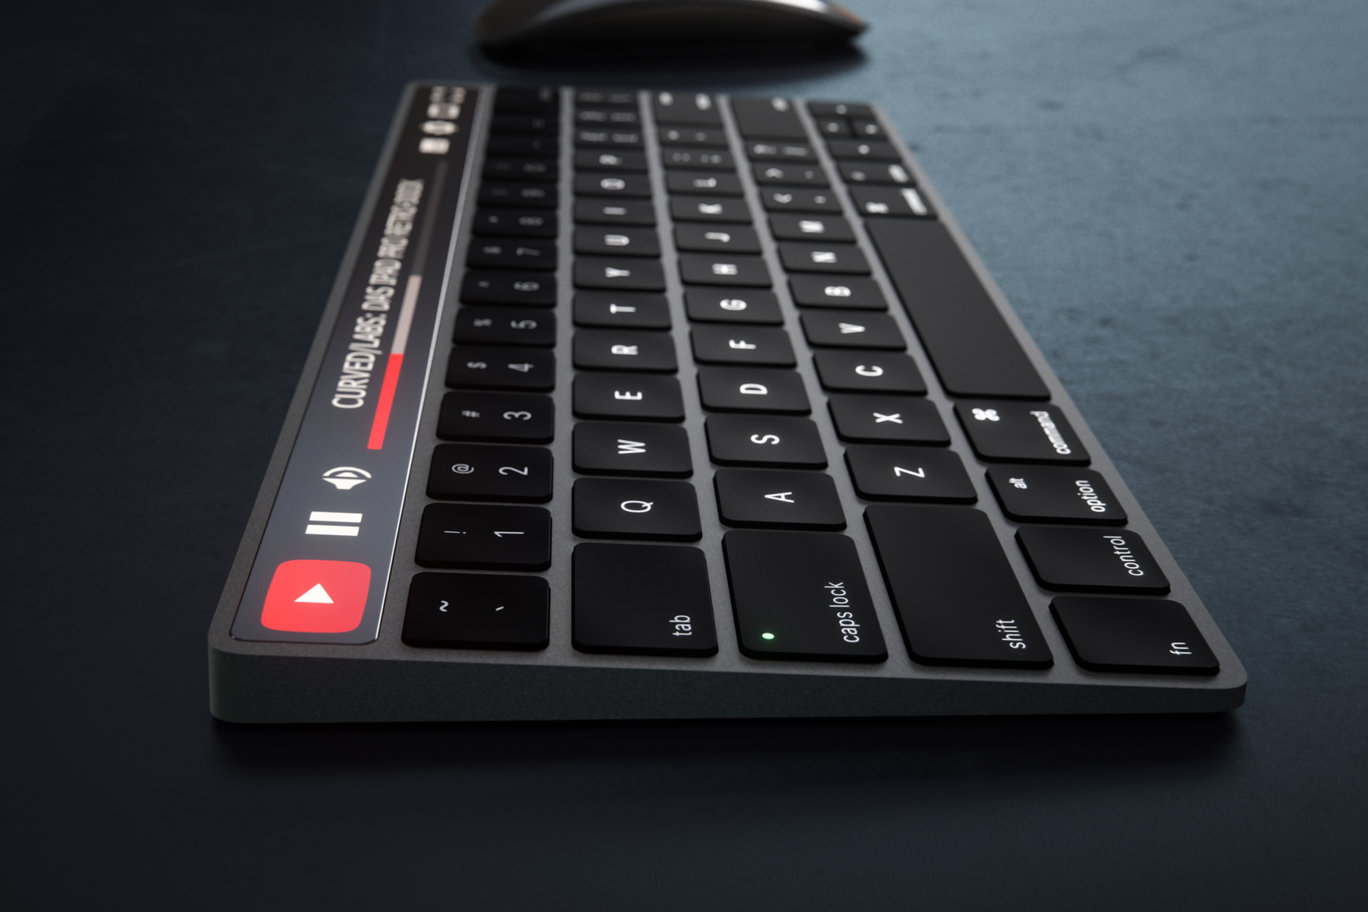 ｢Apple Magic Keyboard｣にOLEDタッチバーが搭載されるとこんな感じに?? 予想画像公開 | 気になる、記になる…